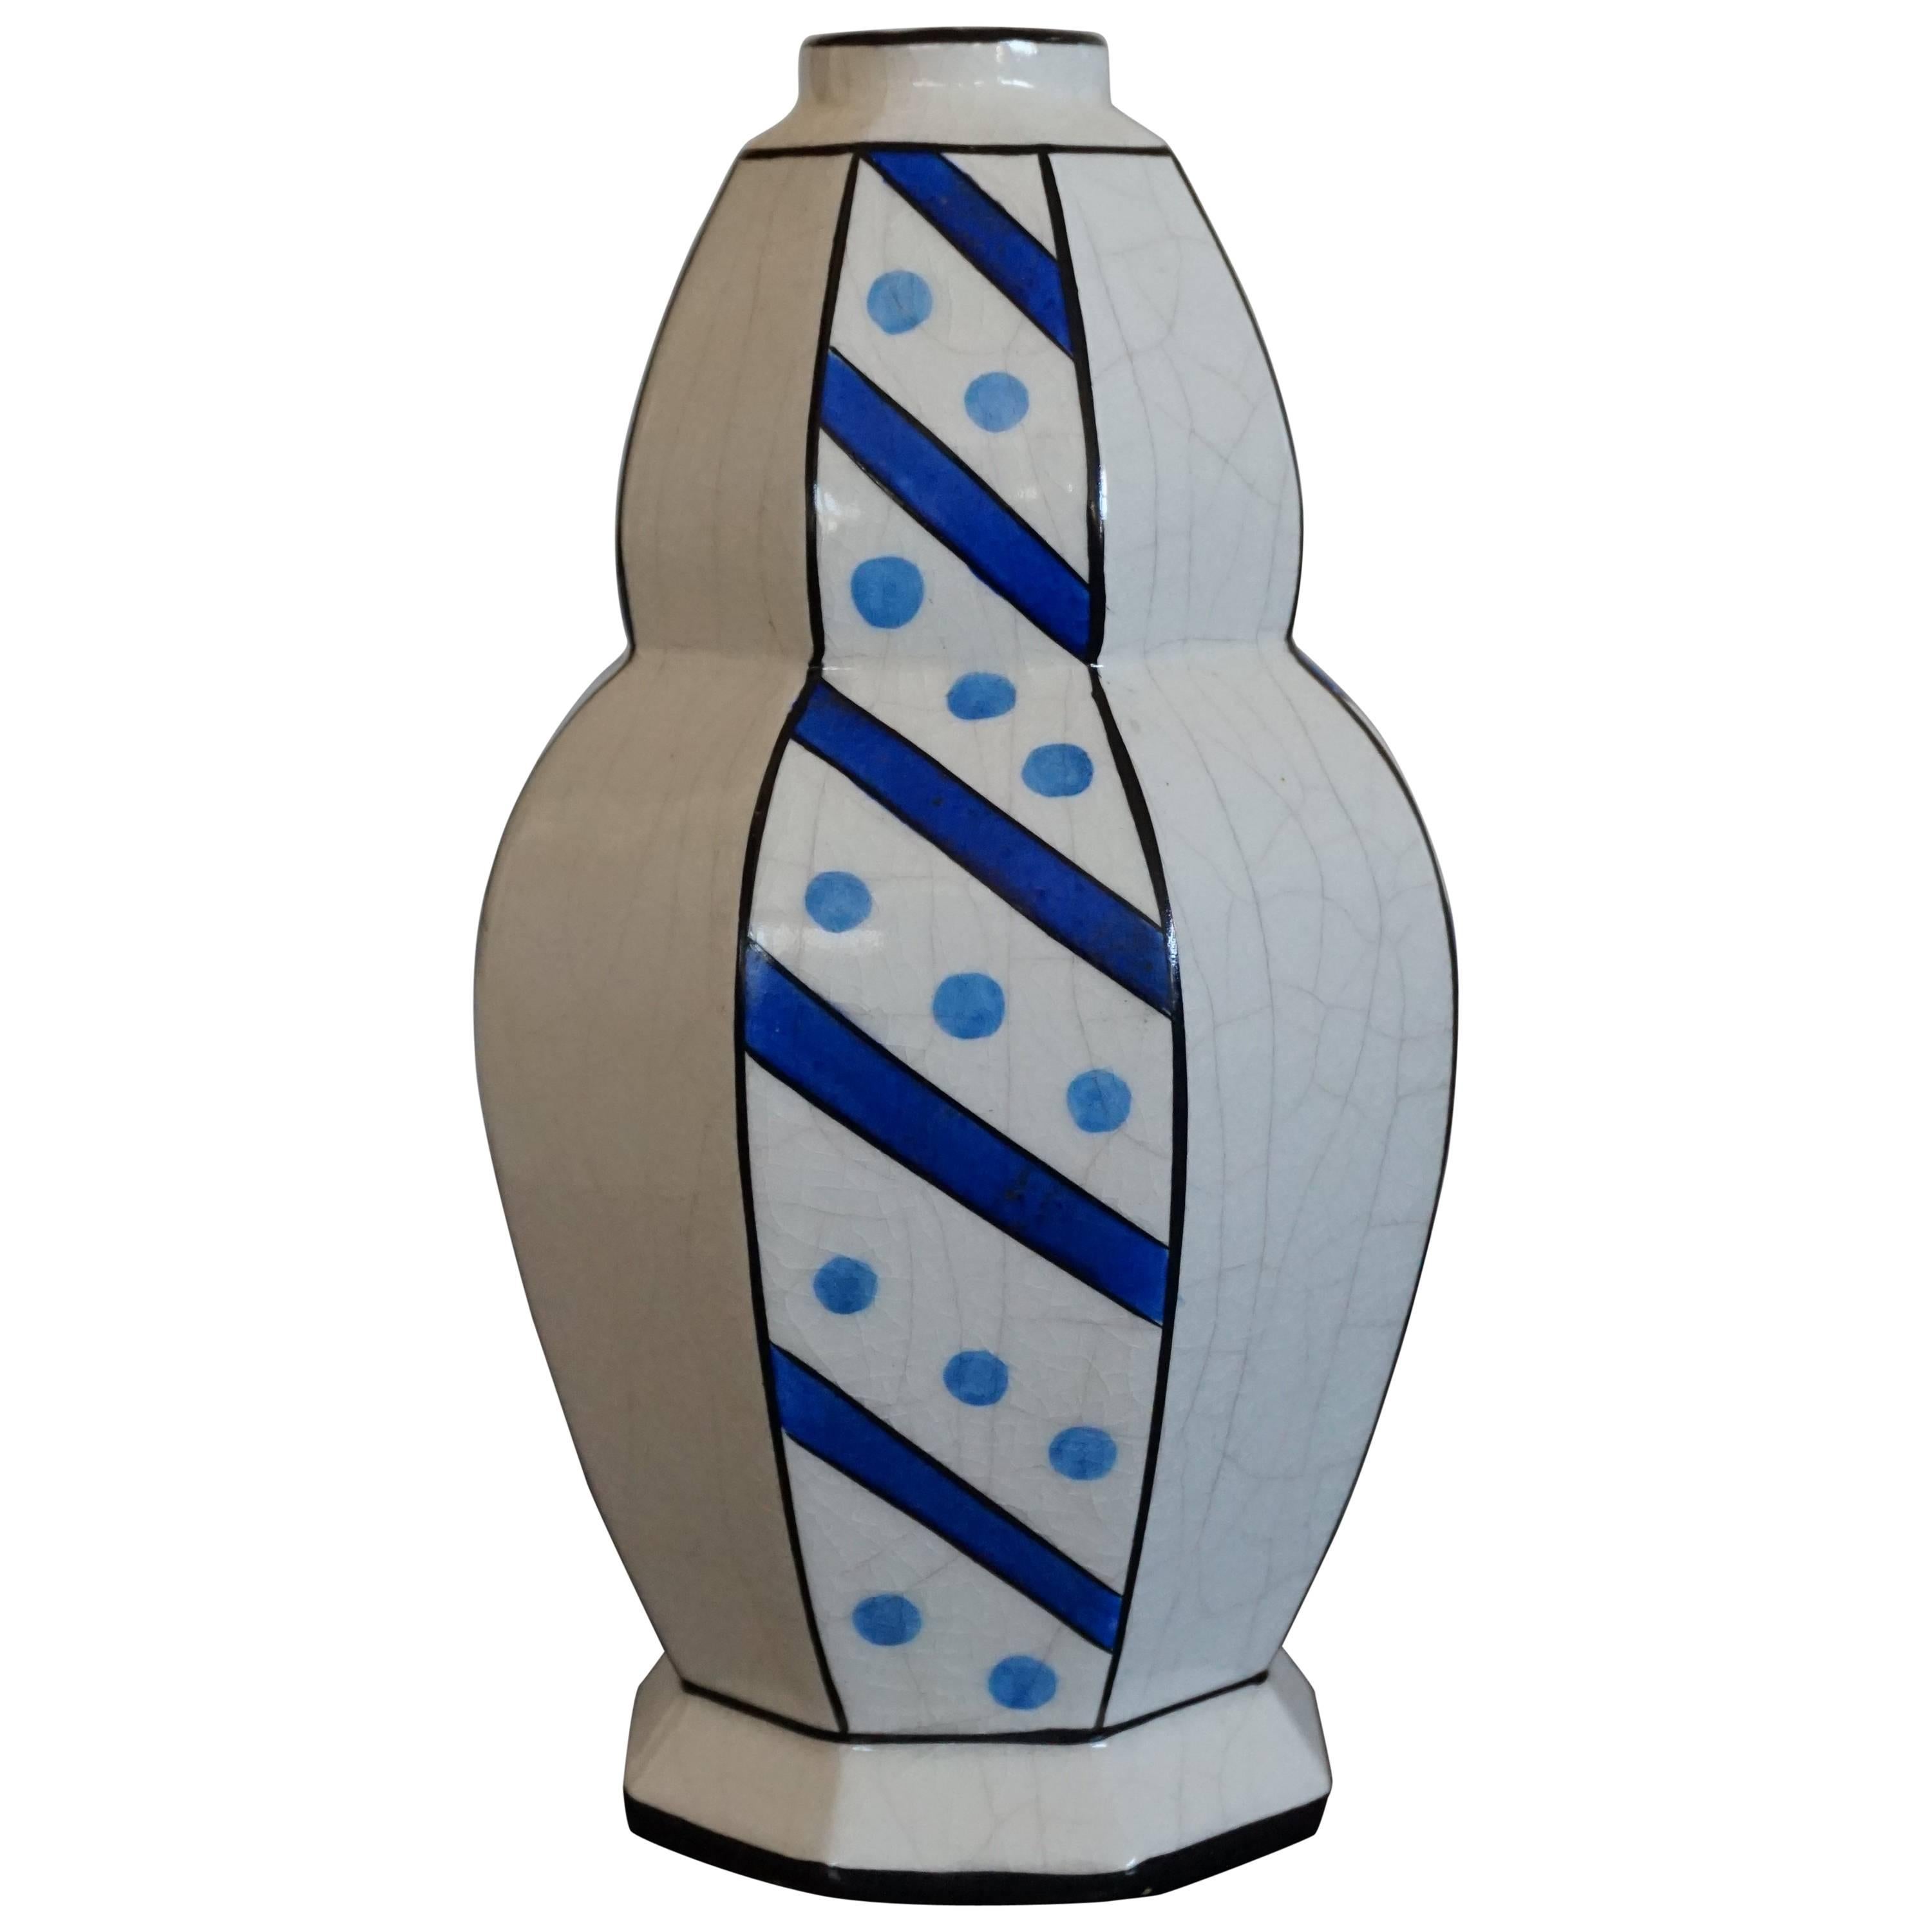 Vase im glasierten Art-Déco-Design, Charles Catteau zugeschrieben, blaue Punkte und Streifen